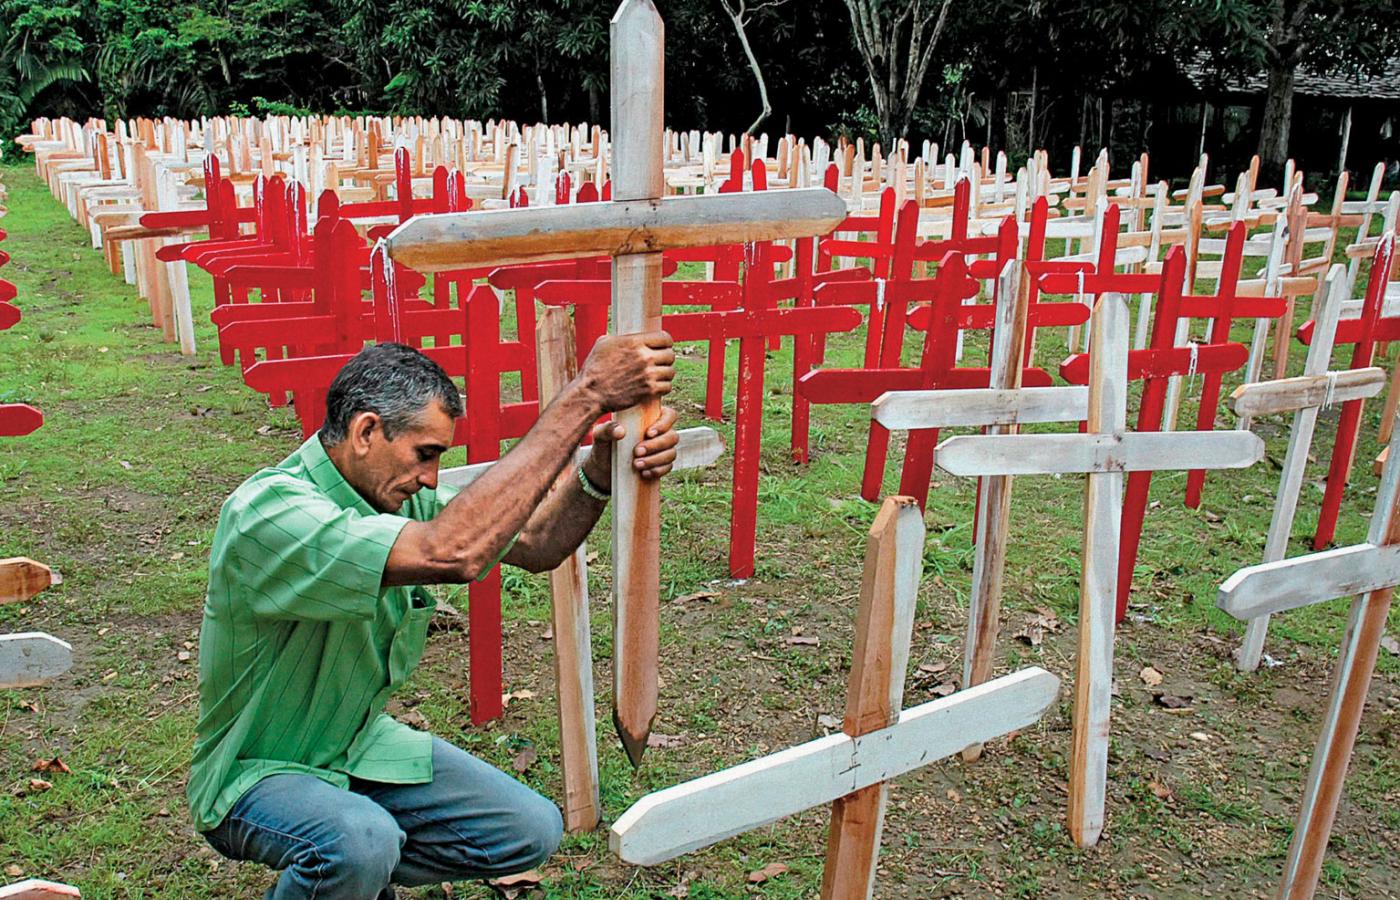 W pobliżu miejsca, gdzie zamordowano ekolożkę Dorothy Stang, ustawiono 774 białe krzyże symbolizujące zabitych obrońców lasów amazońskich w Brazylii. 48 czerwonych krzyży pokazuje, ilu osobom grożono śmiercią.